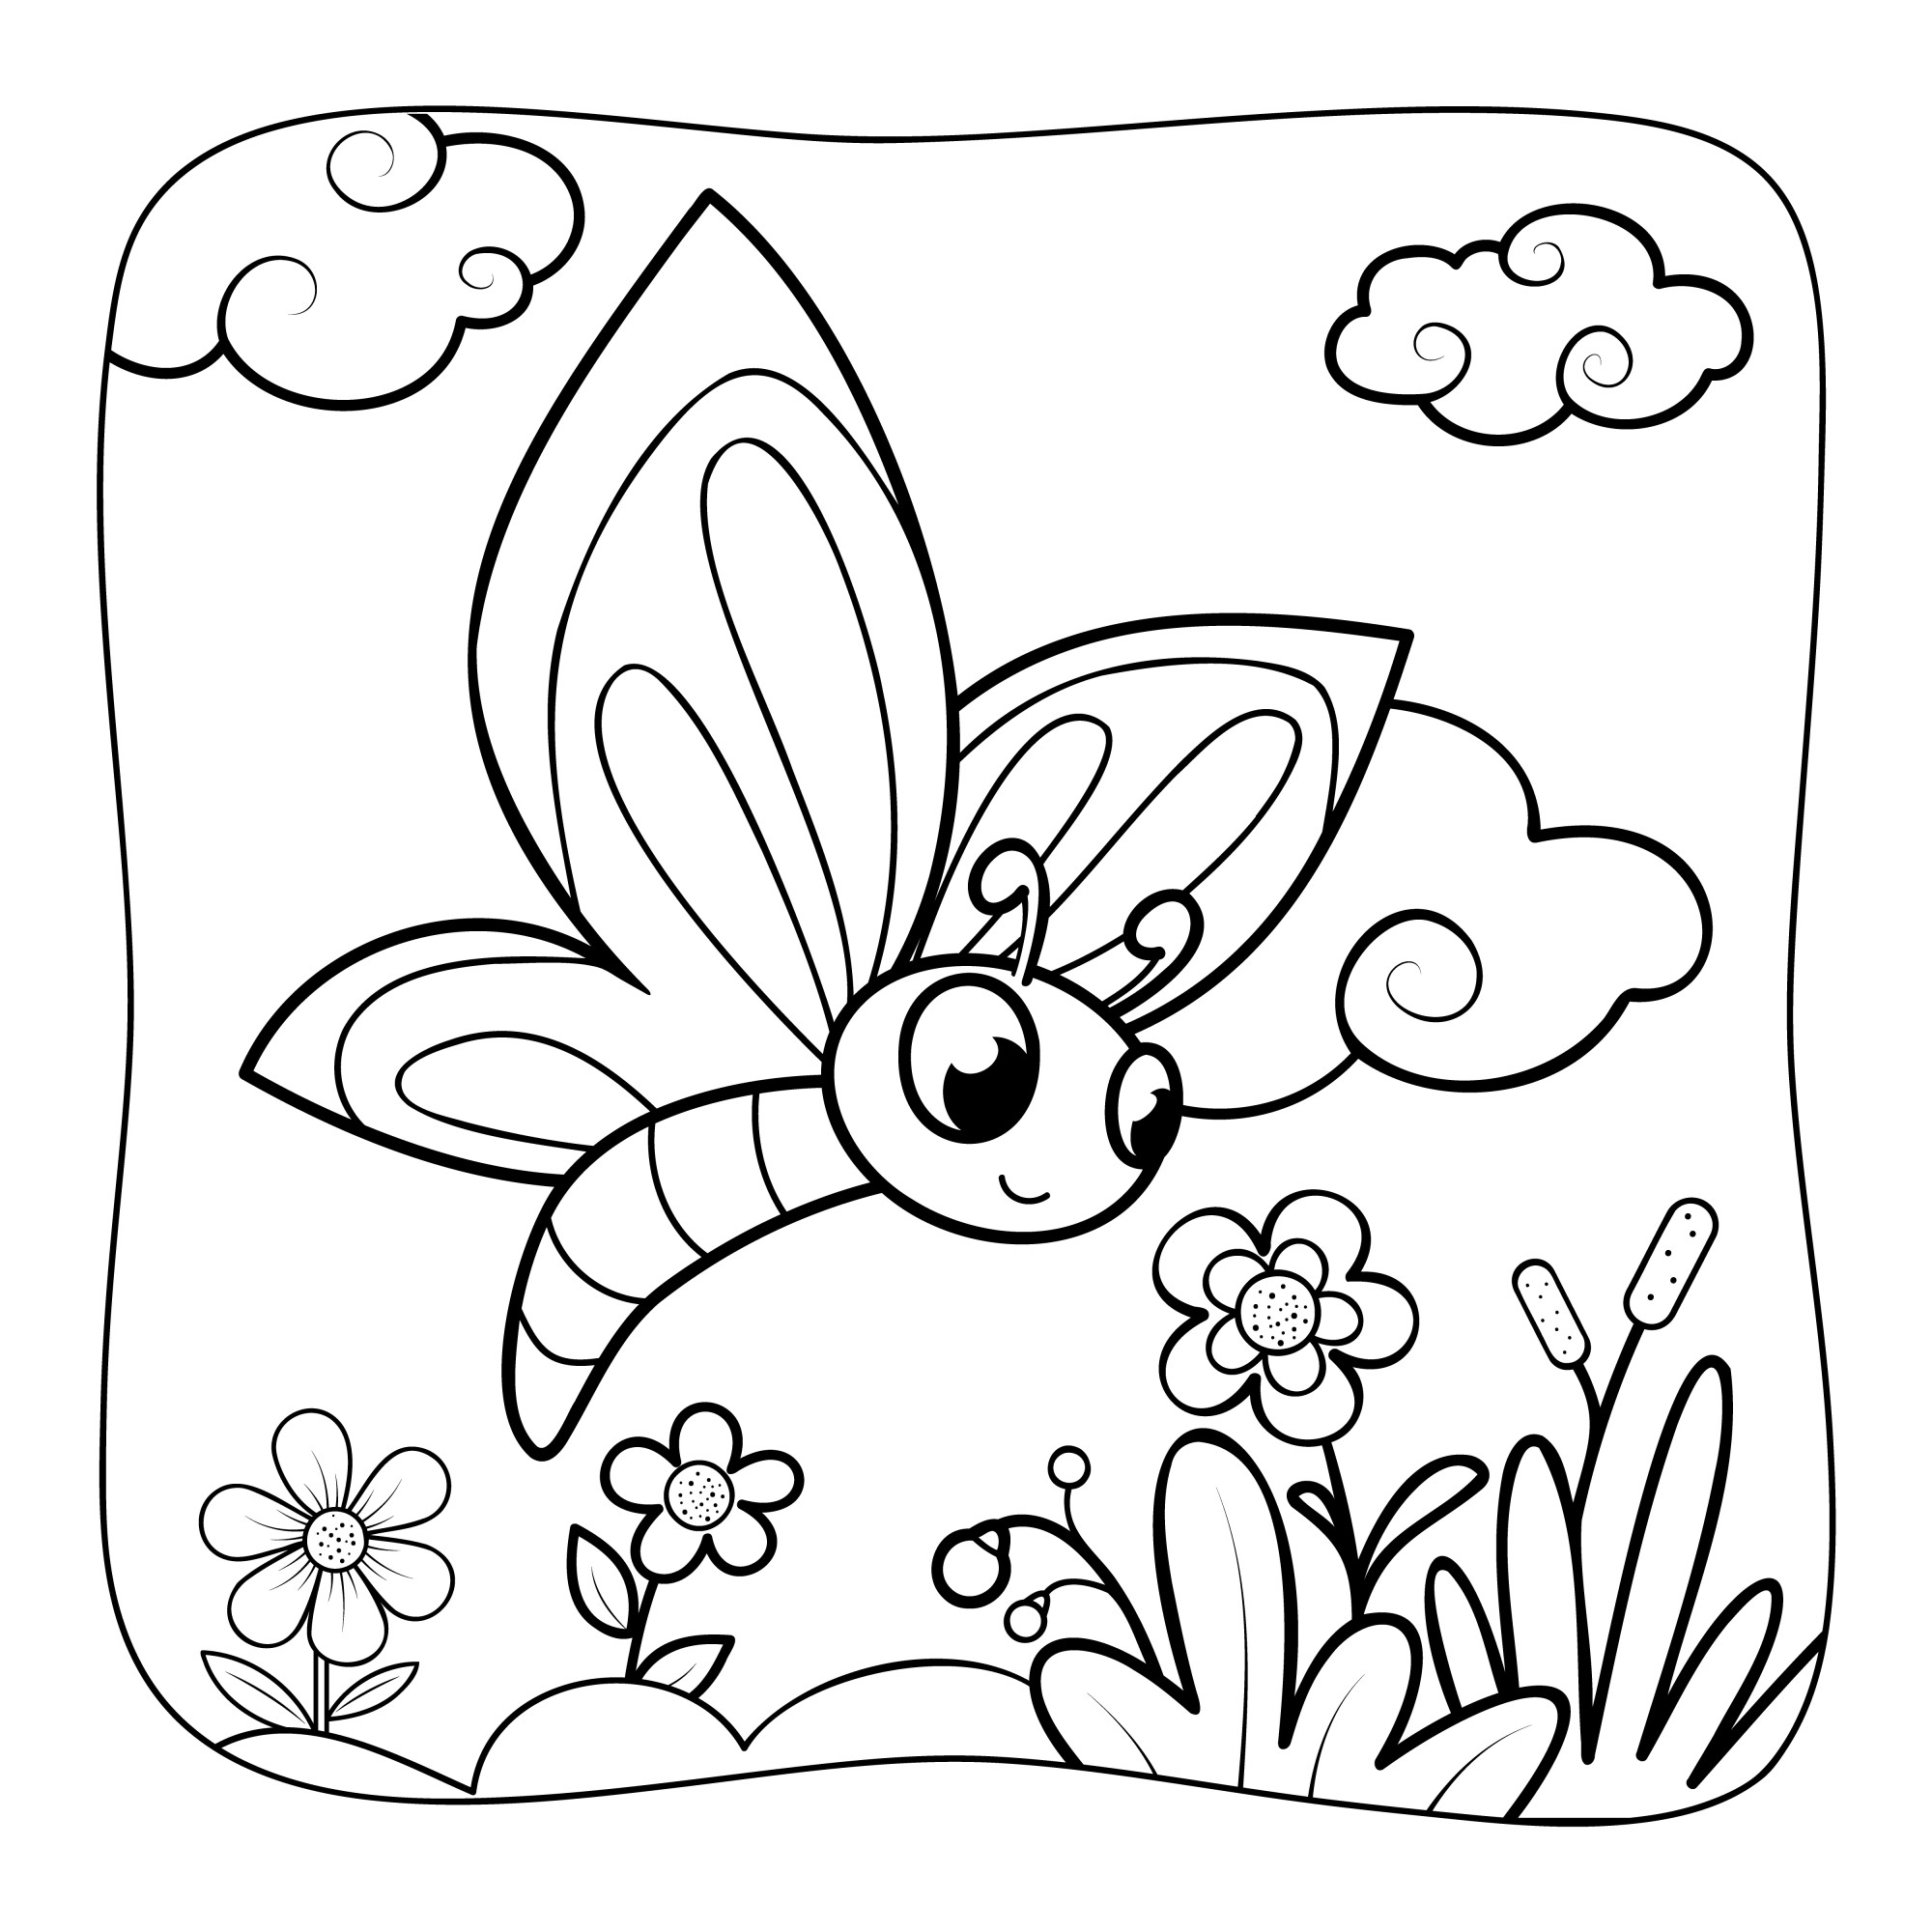 Раскраска для детей: мультяшная бабочка летит над полем